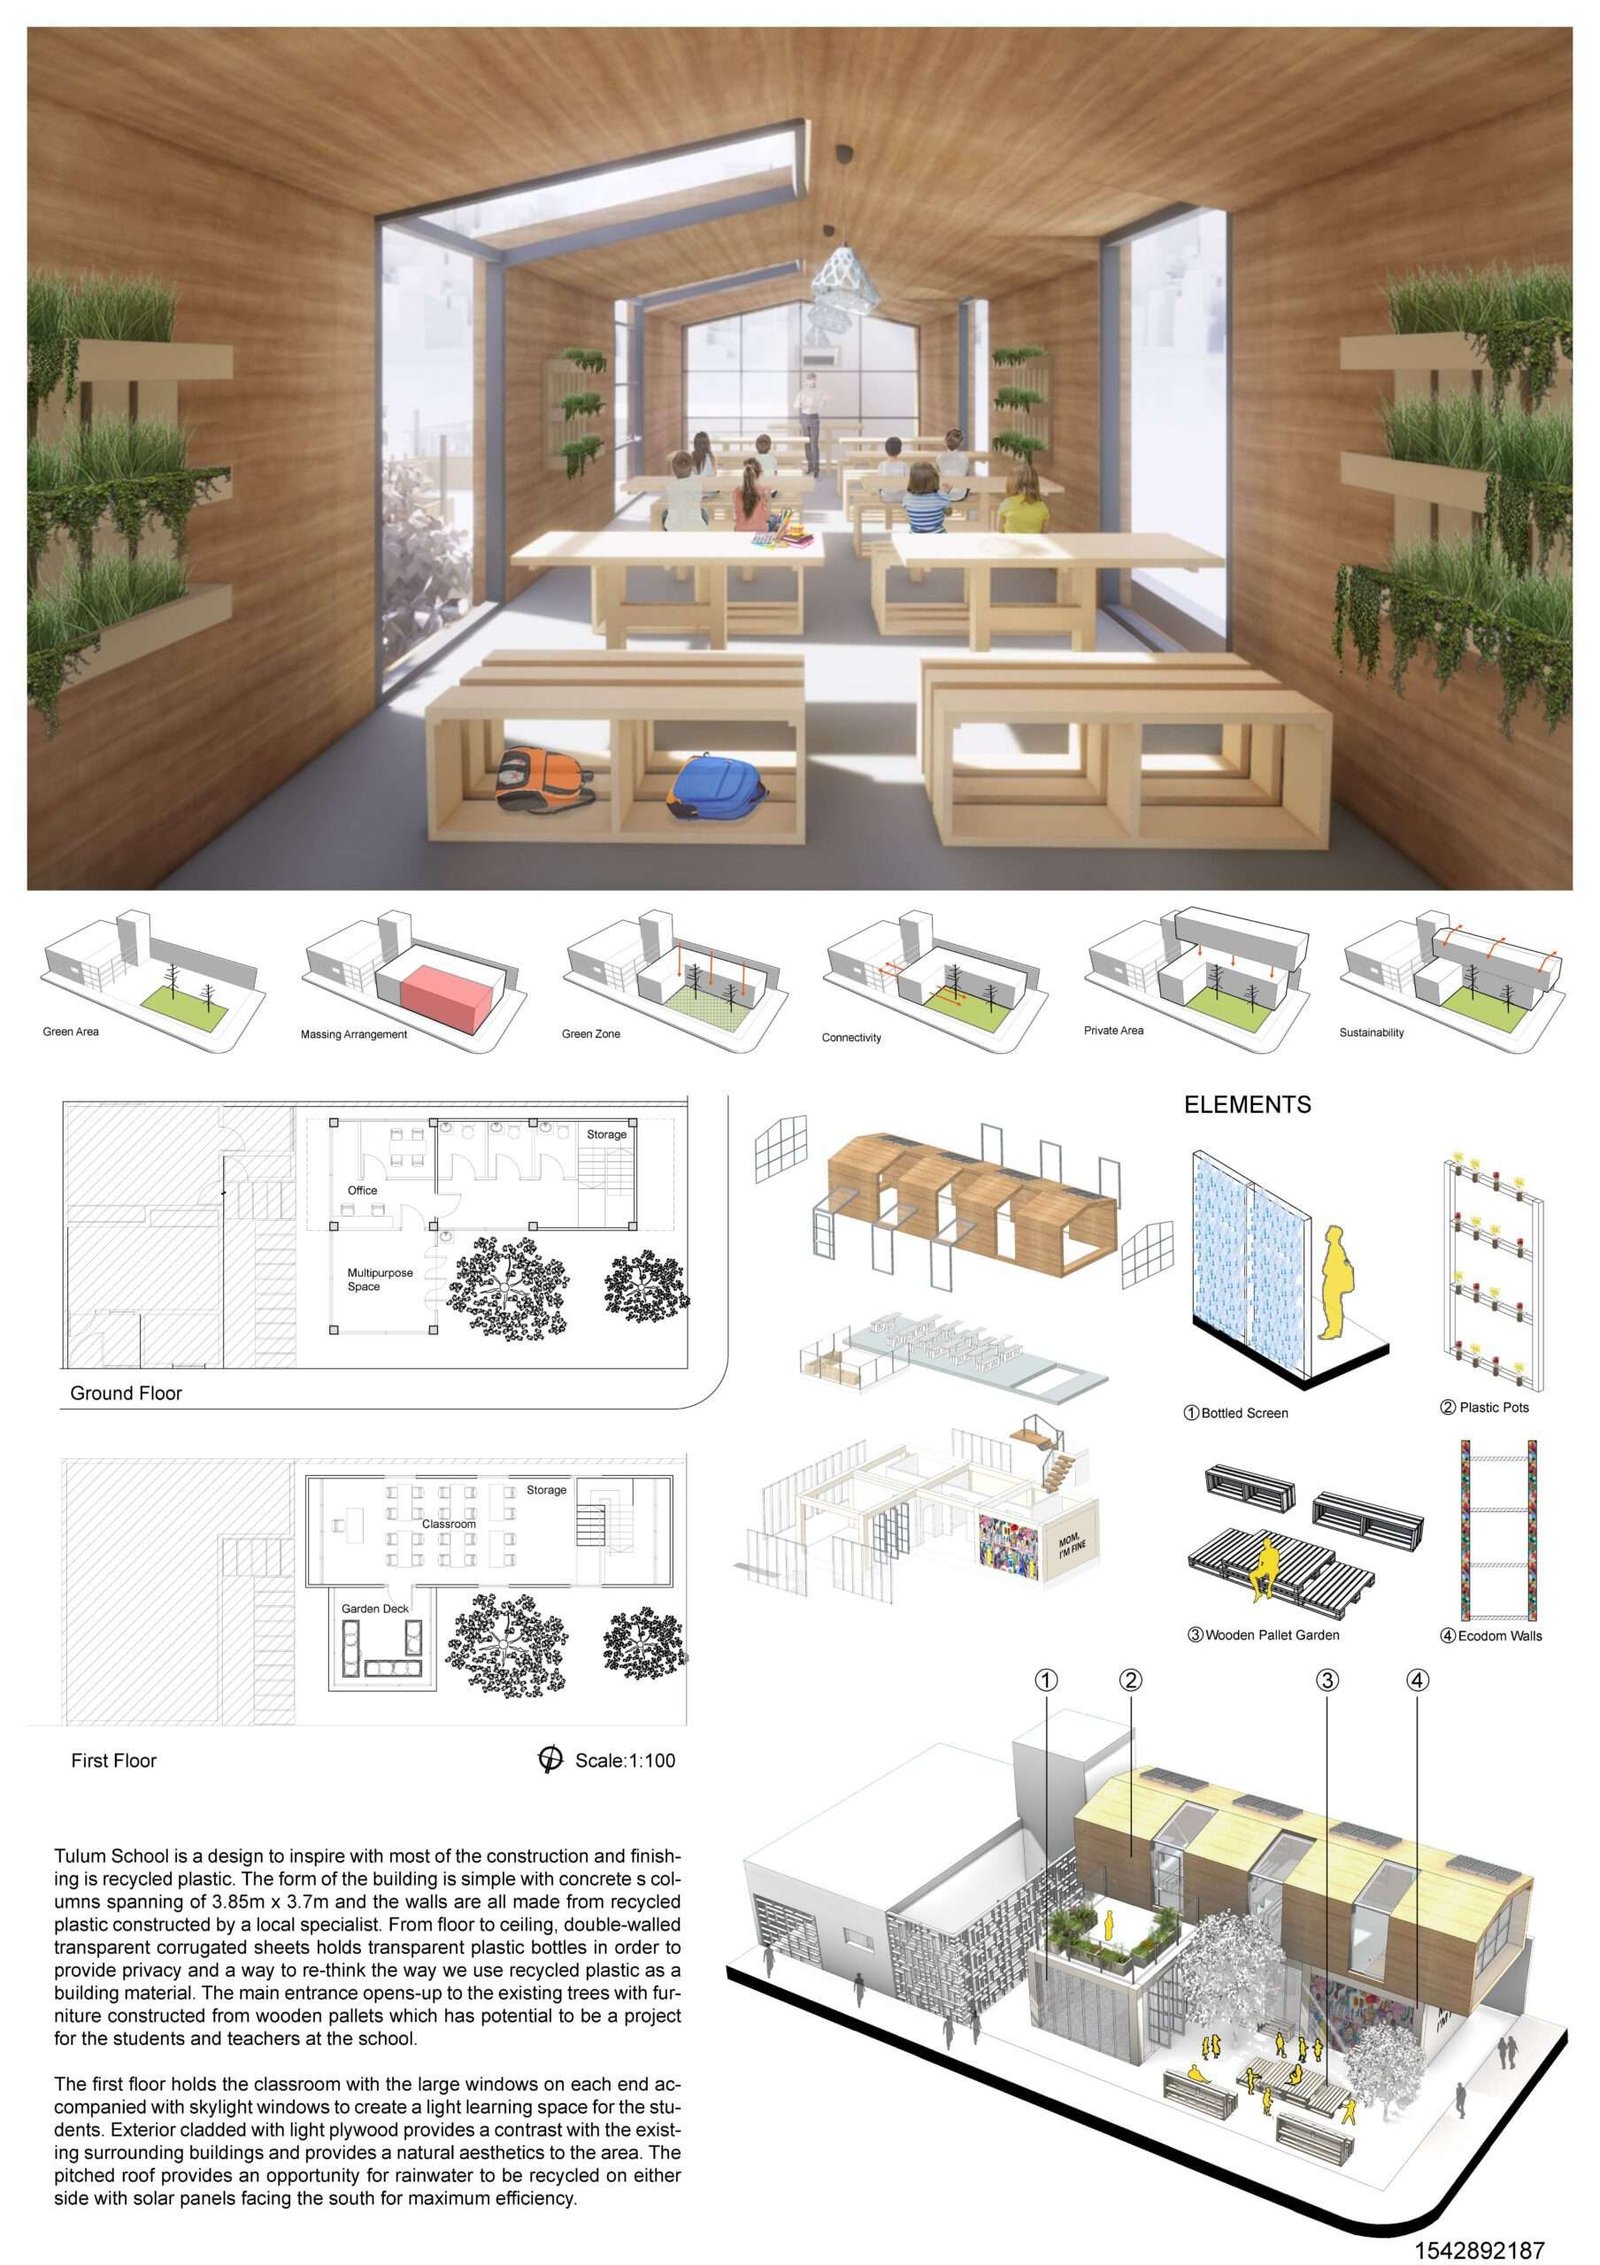 Tulum Plastic School – Architecture Competition